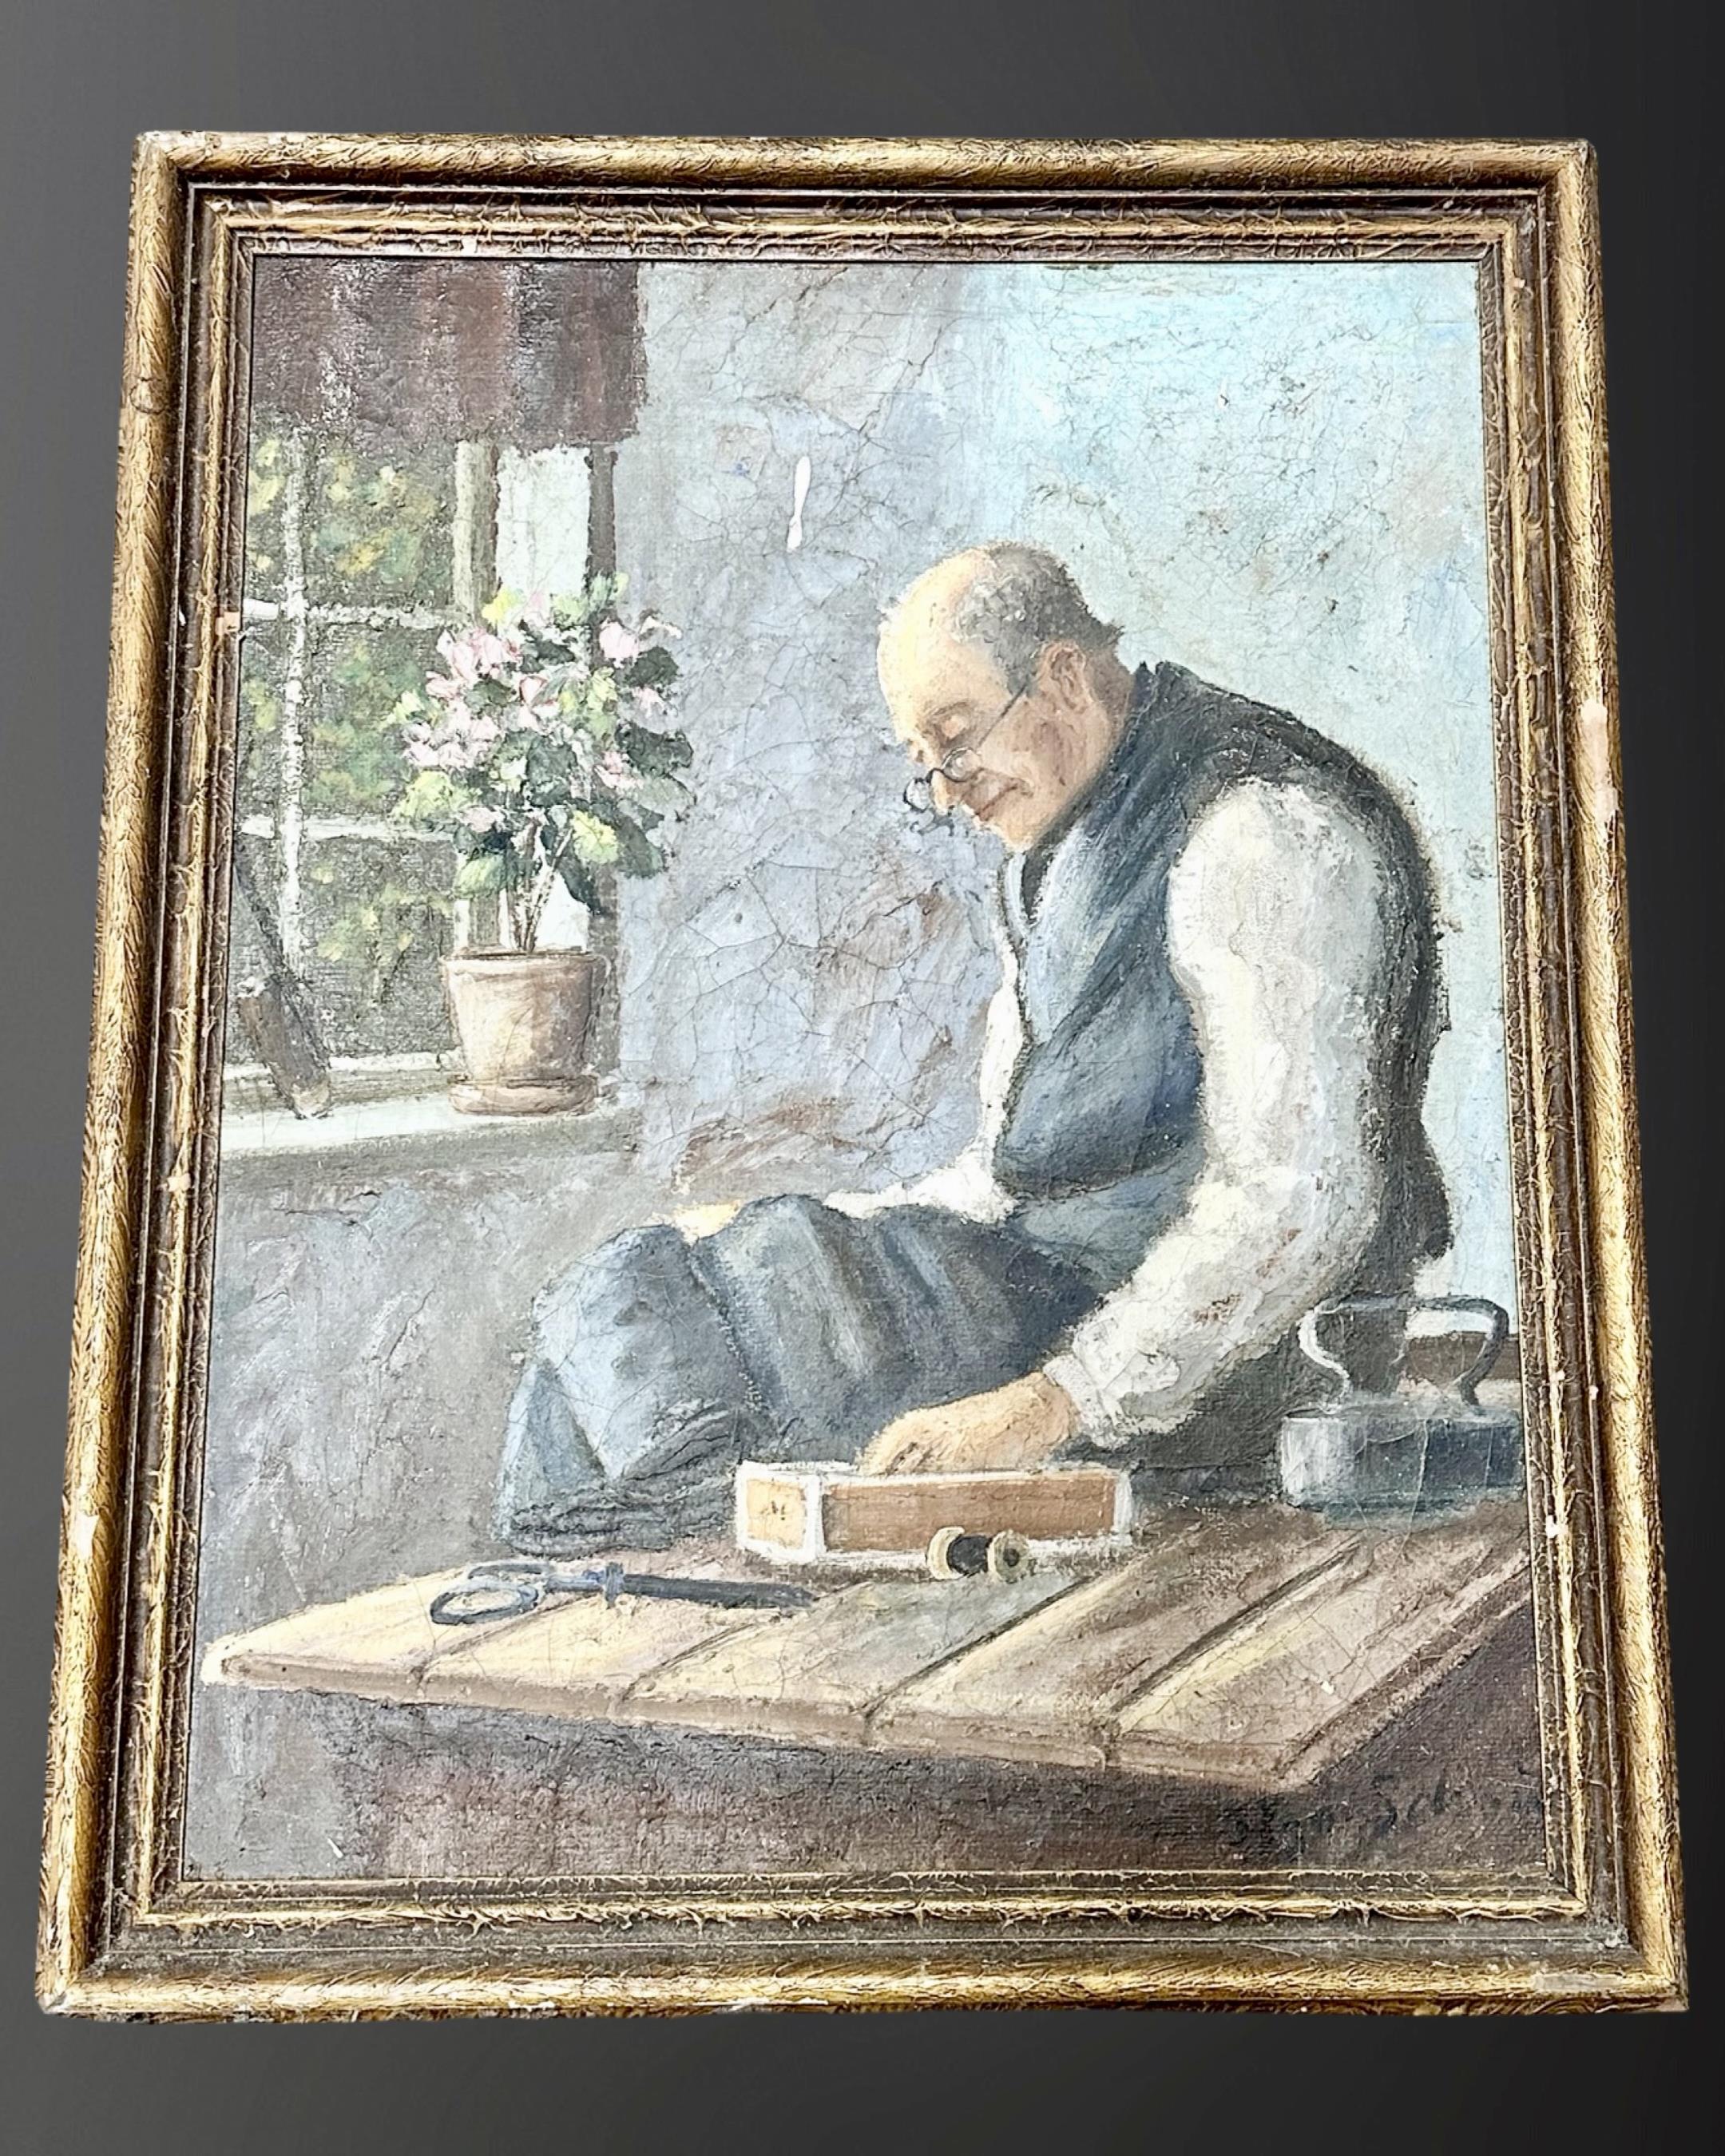 Twentieth century Continental School: Portrait of a man sewing, oil on canvas, 45 cm x 56 cm,